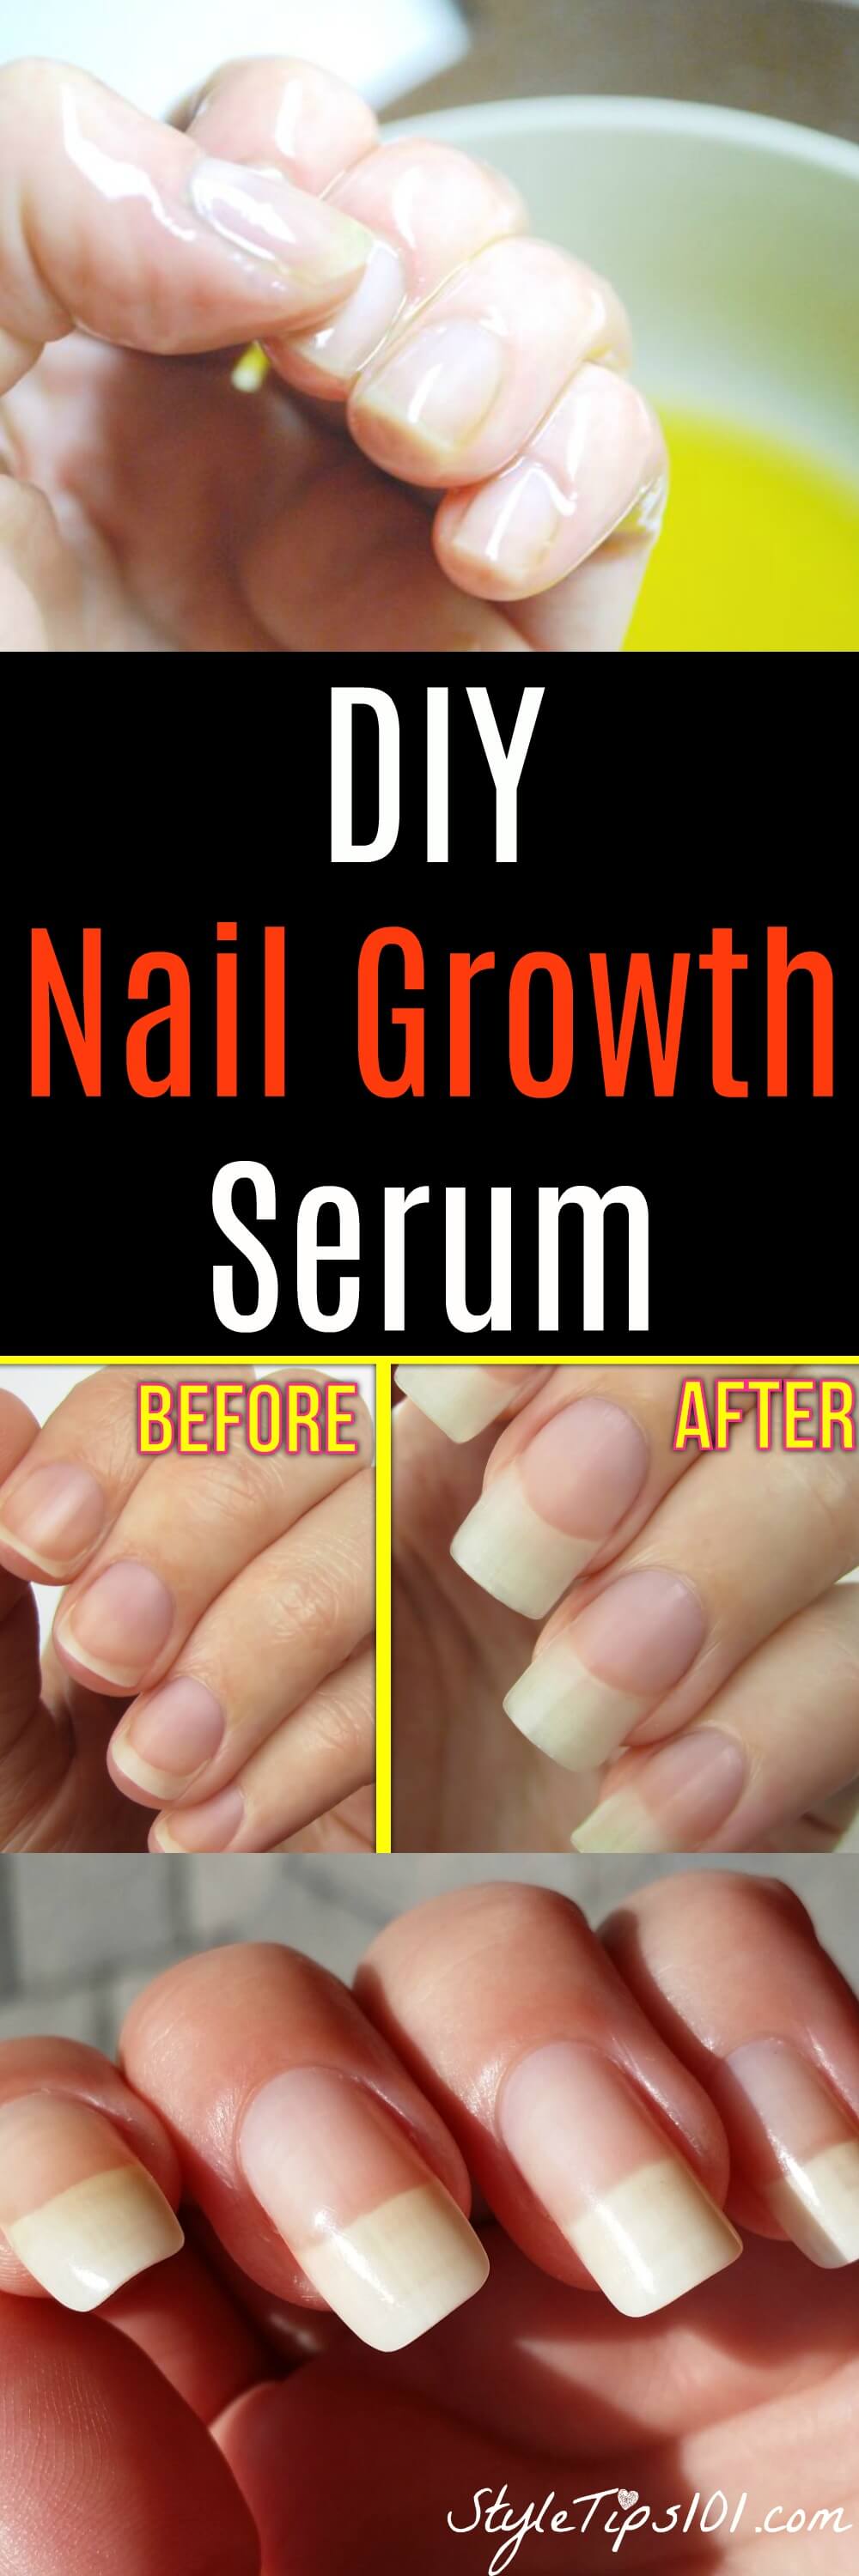 DIY Nail Growth Serum